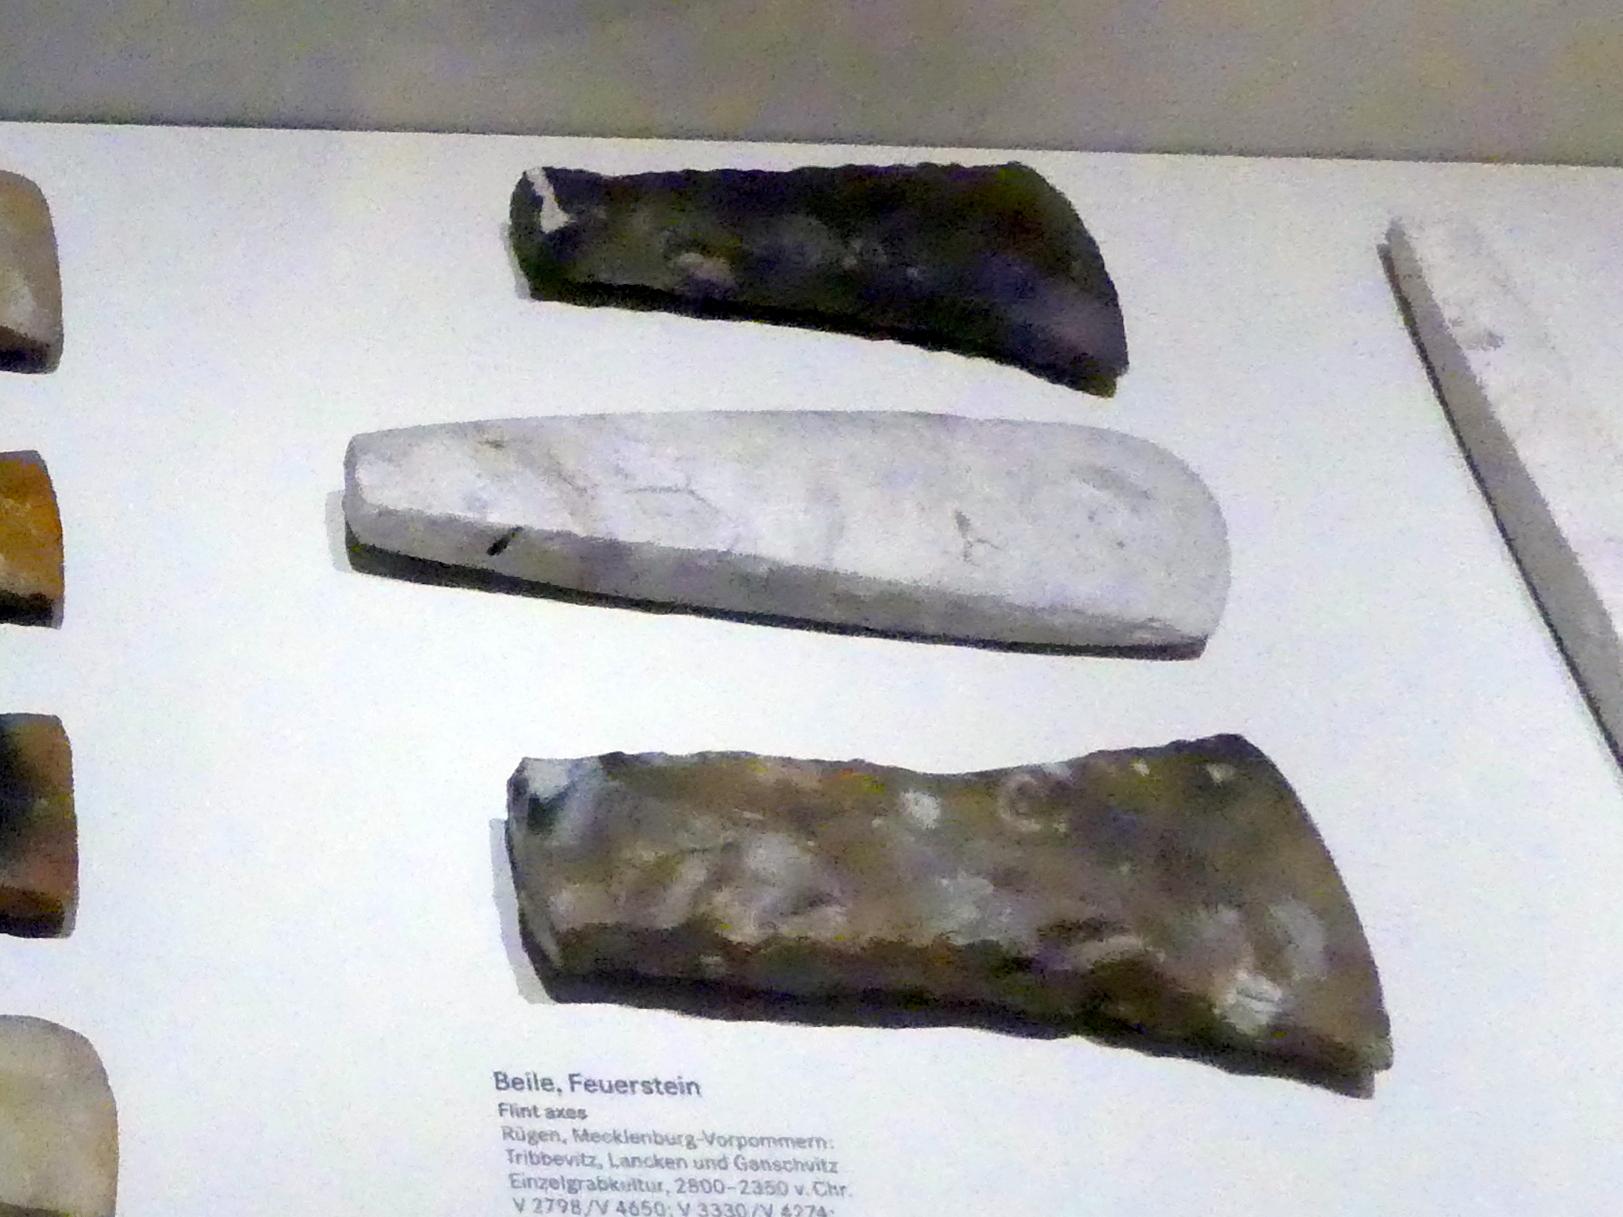 Beil, Nordisches Neolithikum, 4400 - 2350 v. Chr., 2800 - 2350 v. Chr.